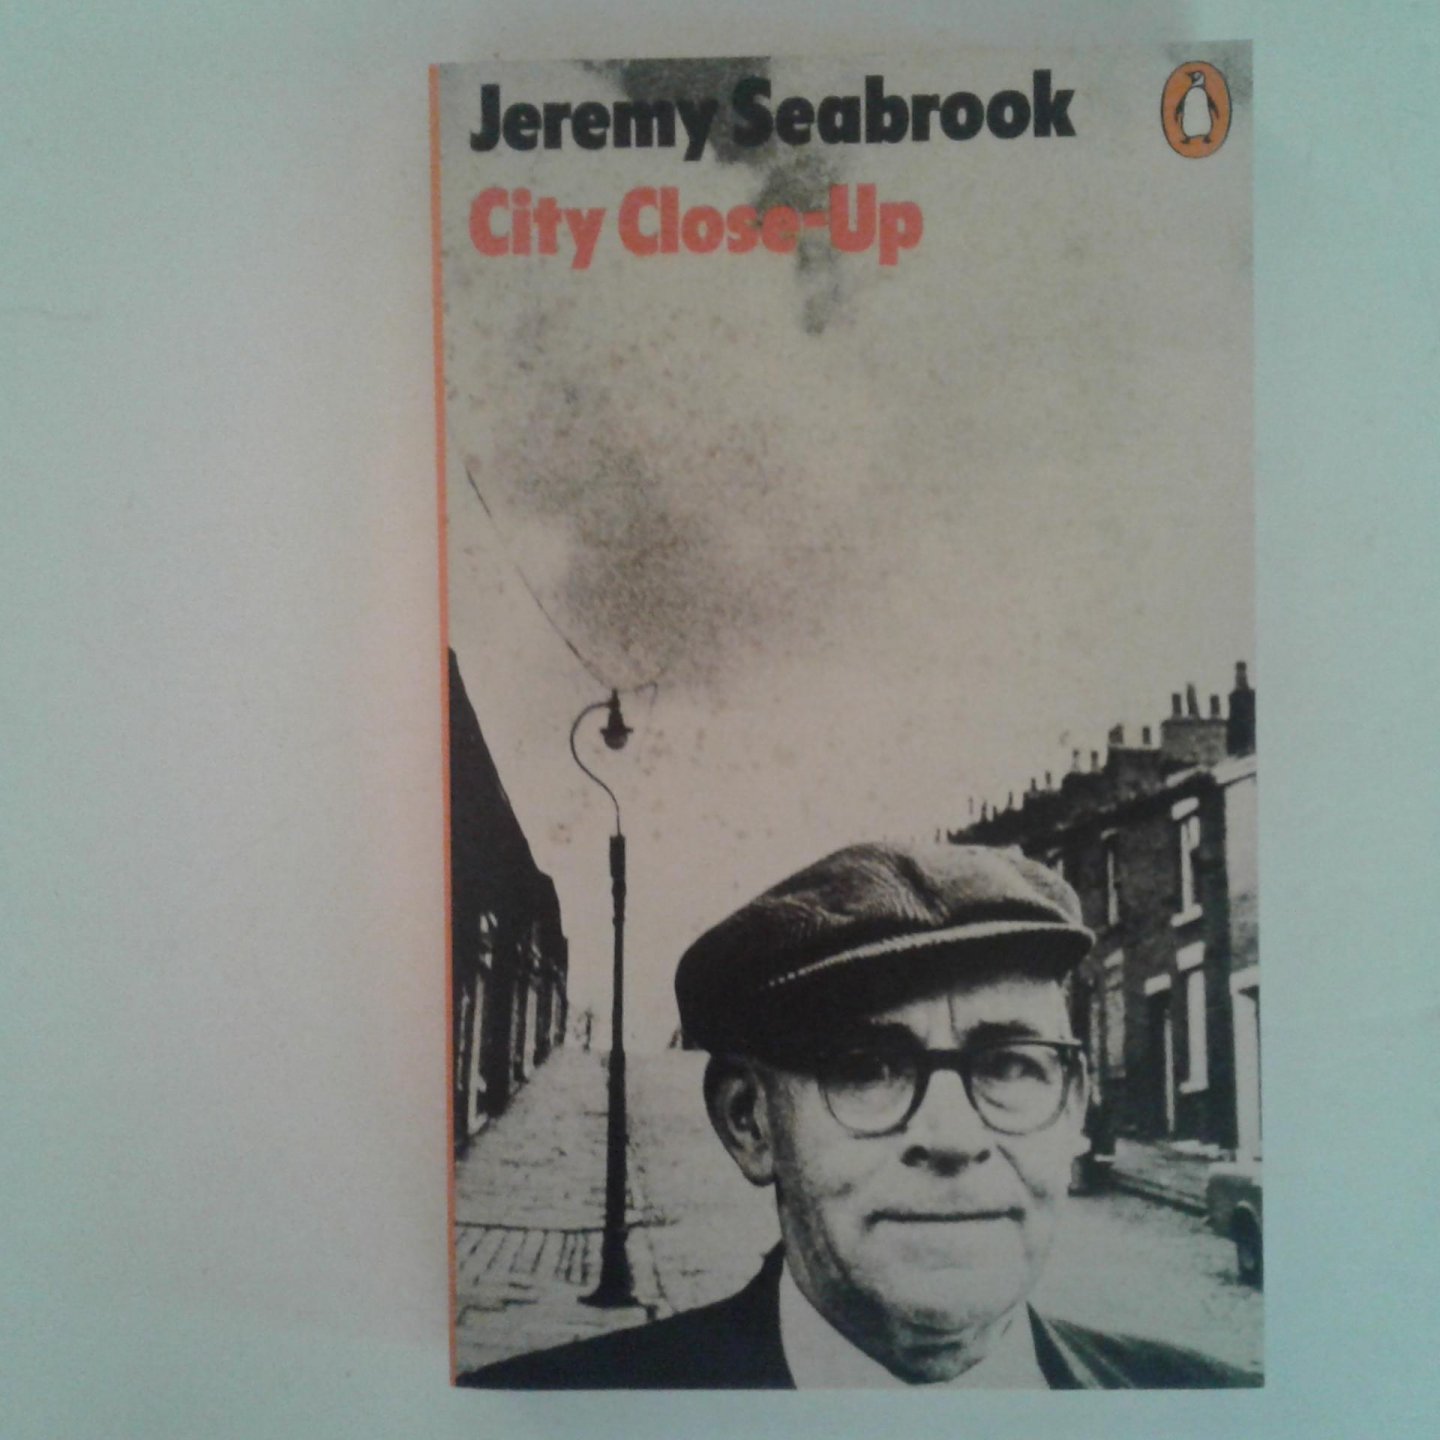 Seabrook, Jeremy - City Close-Up